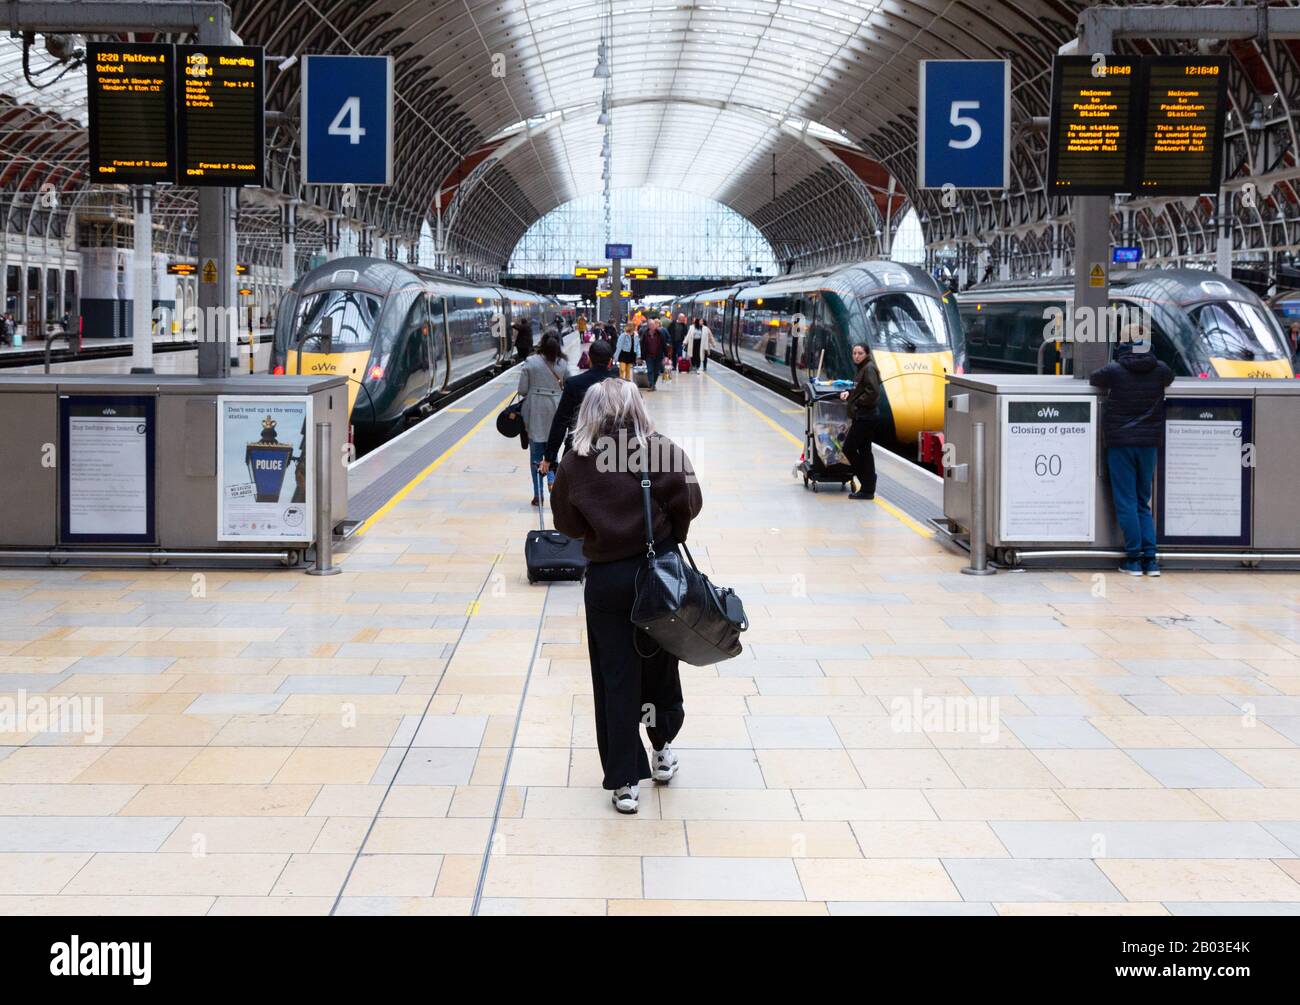 Bahnhof - Bahnreisende, die einen Zug fangen - Personen, die zum Bahnsteig und zu den Zügen laufen, Paddington Station, London UK Stockfoto